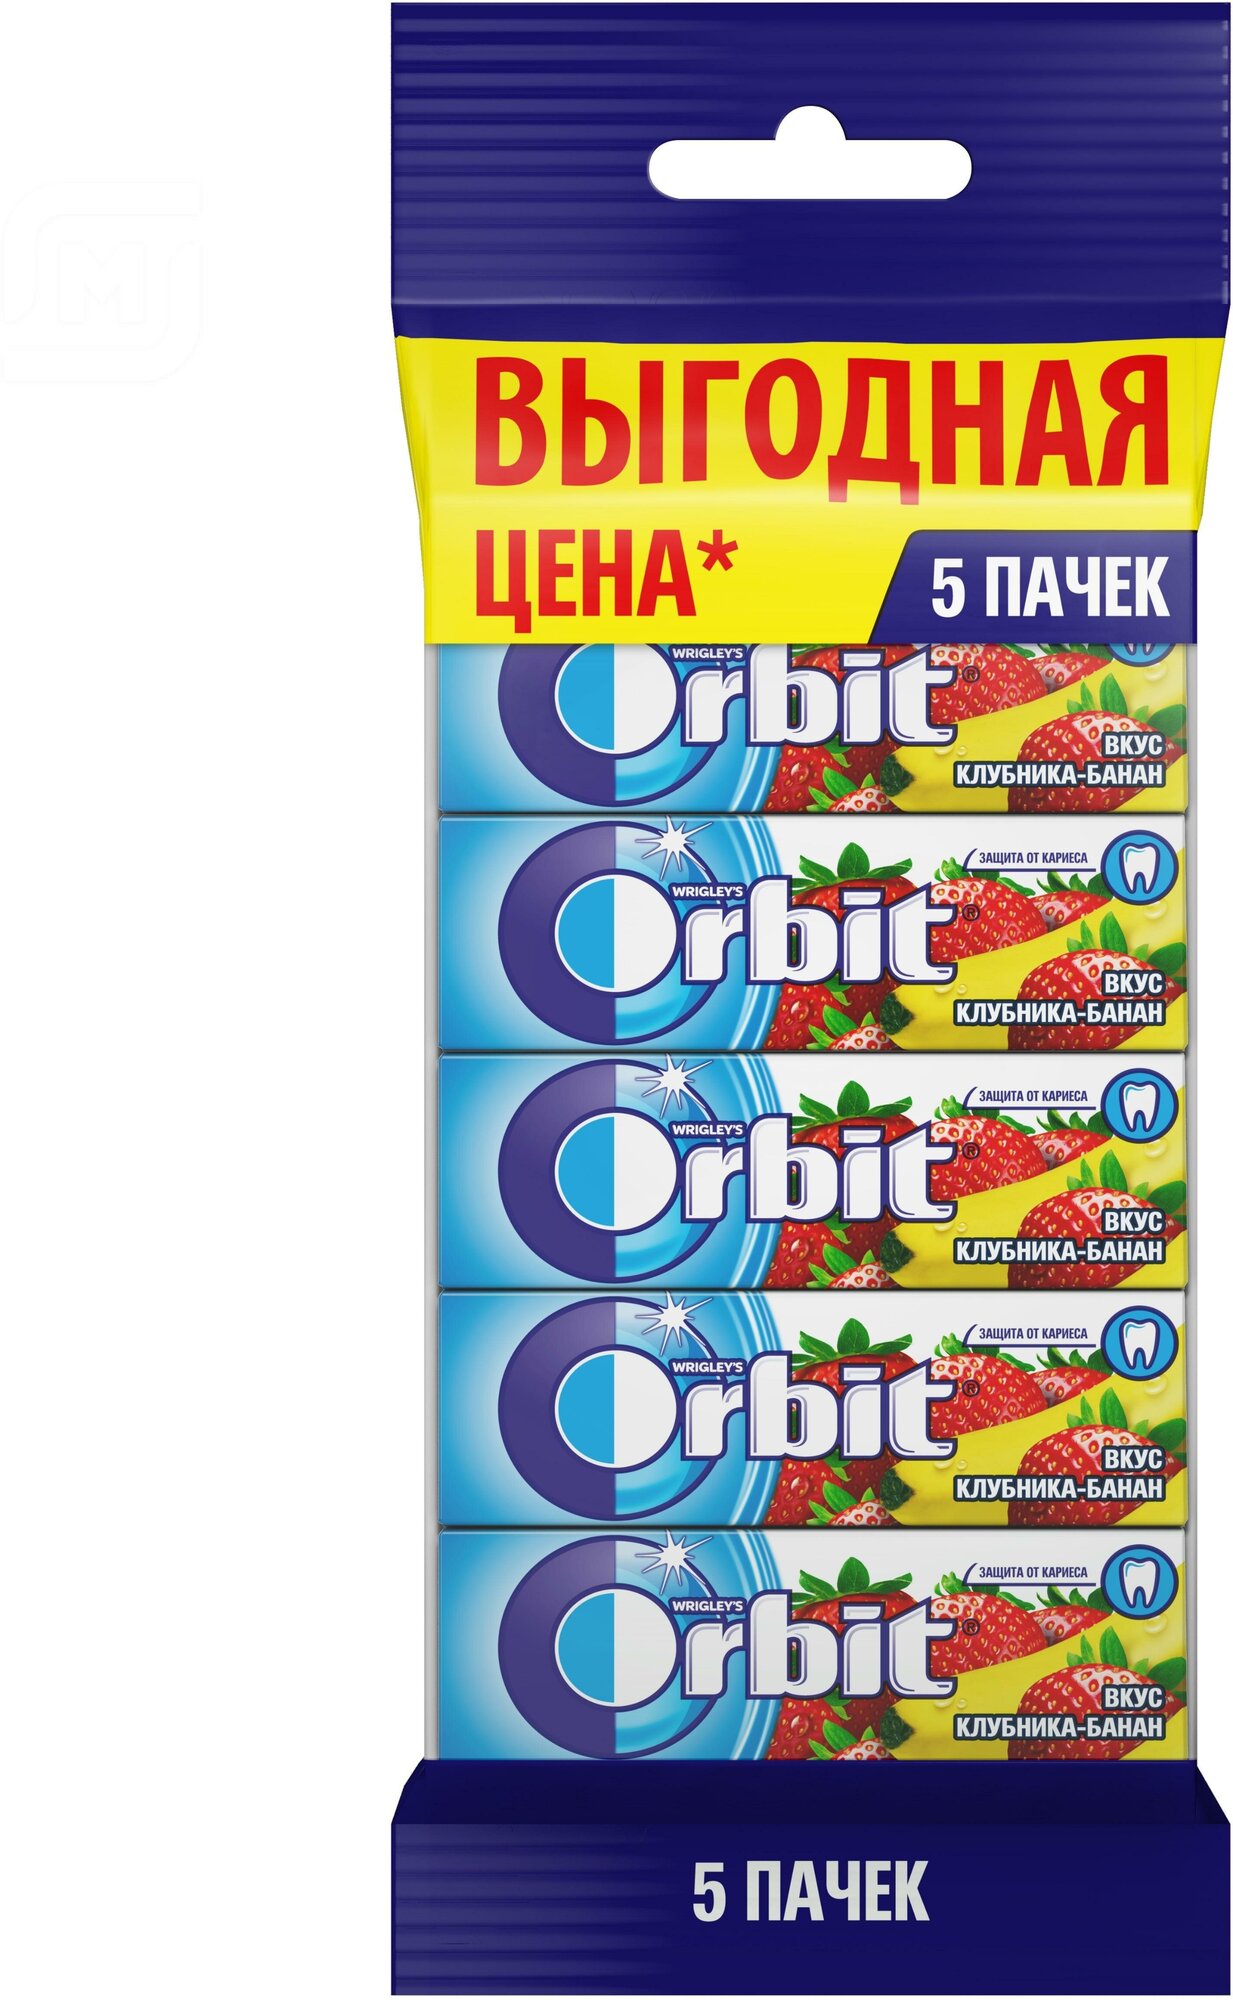 Жевательная резинка Orbit Клубника-банан без сахара, 13.6 г, 5 шт. в уп.